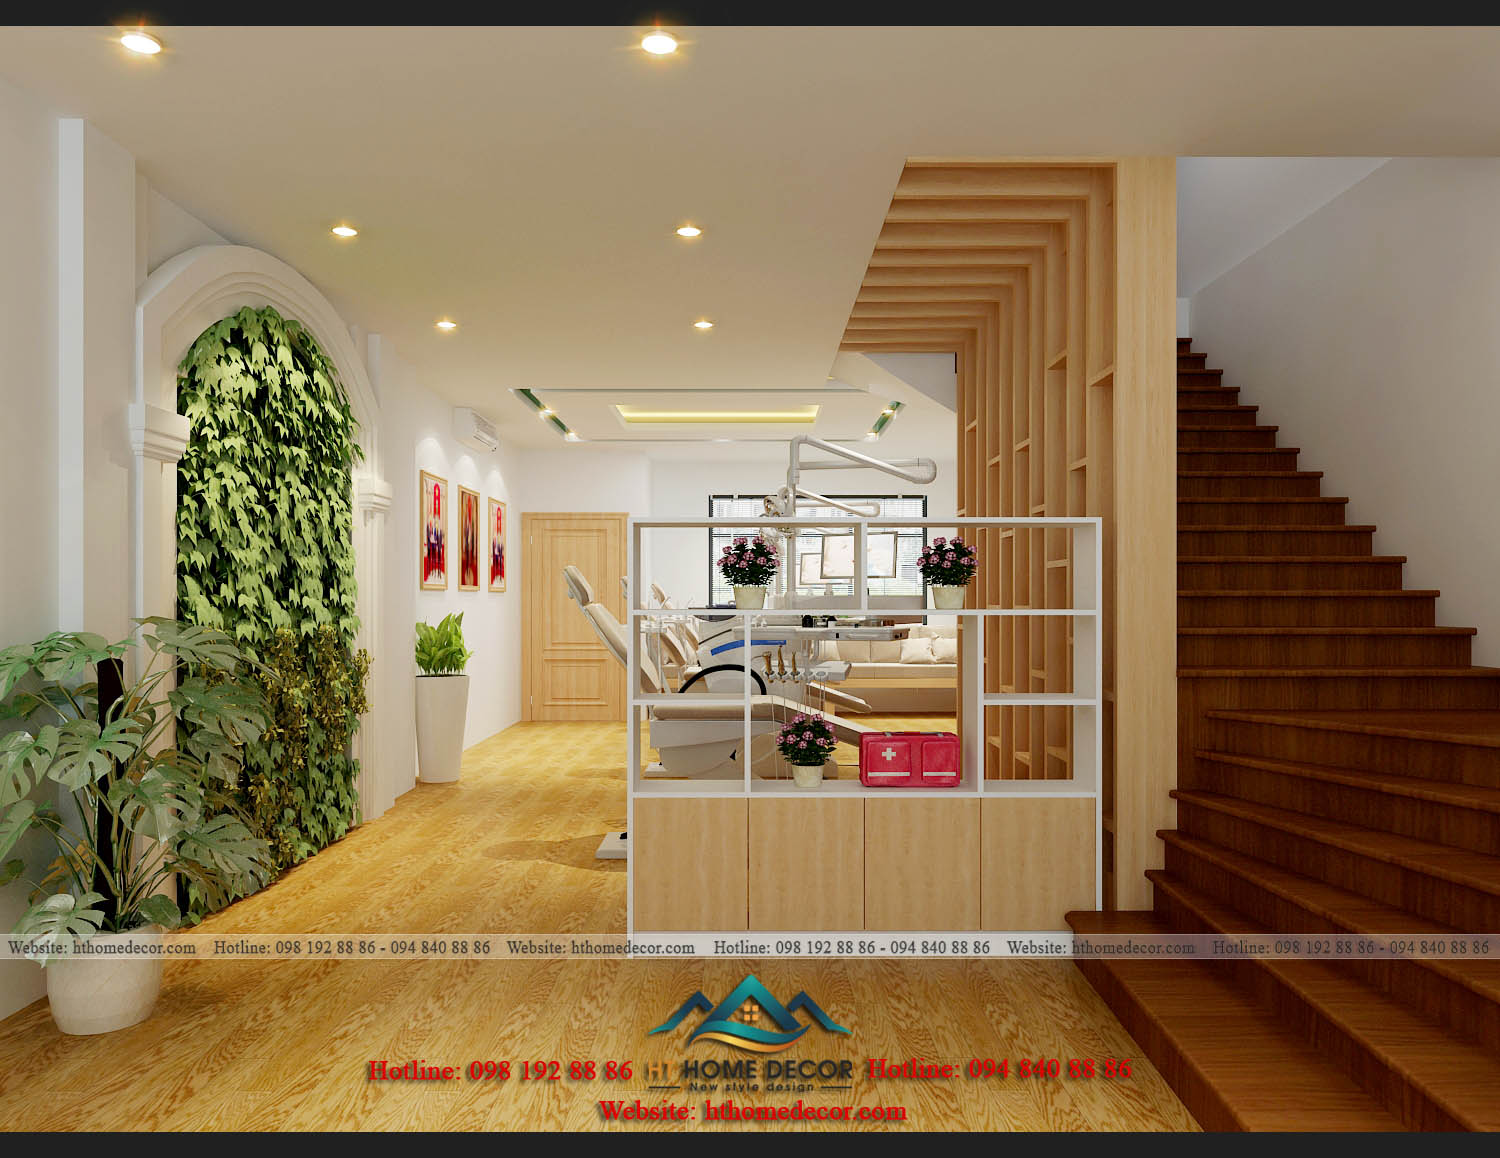 Một góc nhỏ trồng cây dây leo, tạo thành bức tường xanh giữa không gian nha khoa nội thất gỗ. Làm cho không gian thêm sinh động màu sắc hơn.